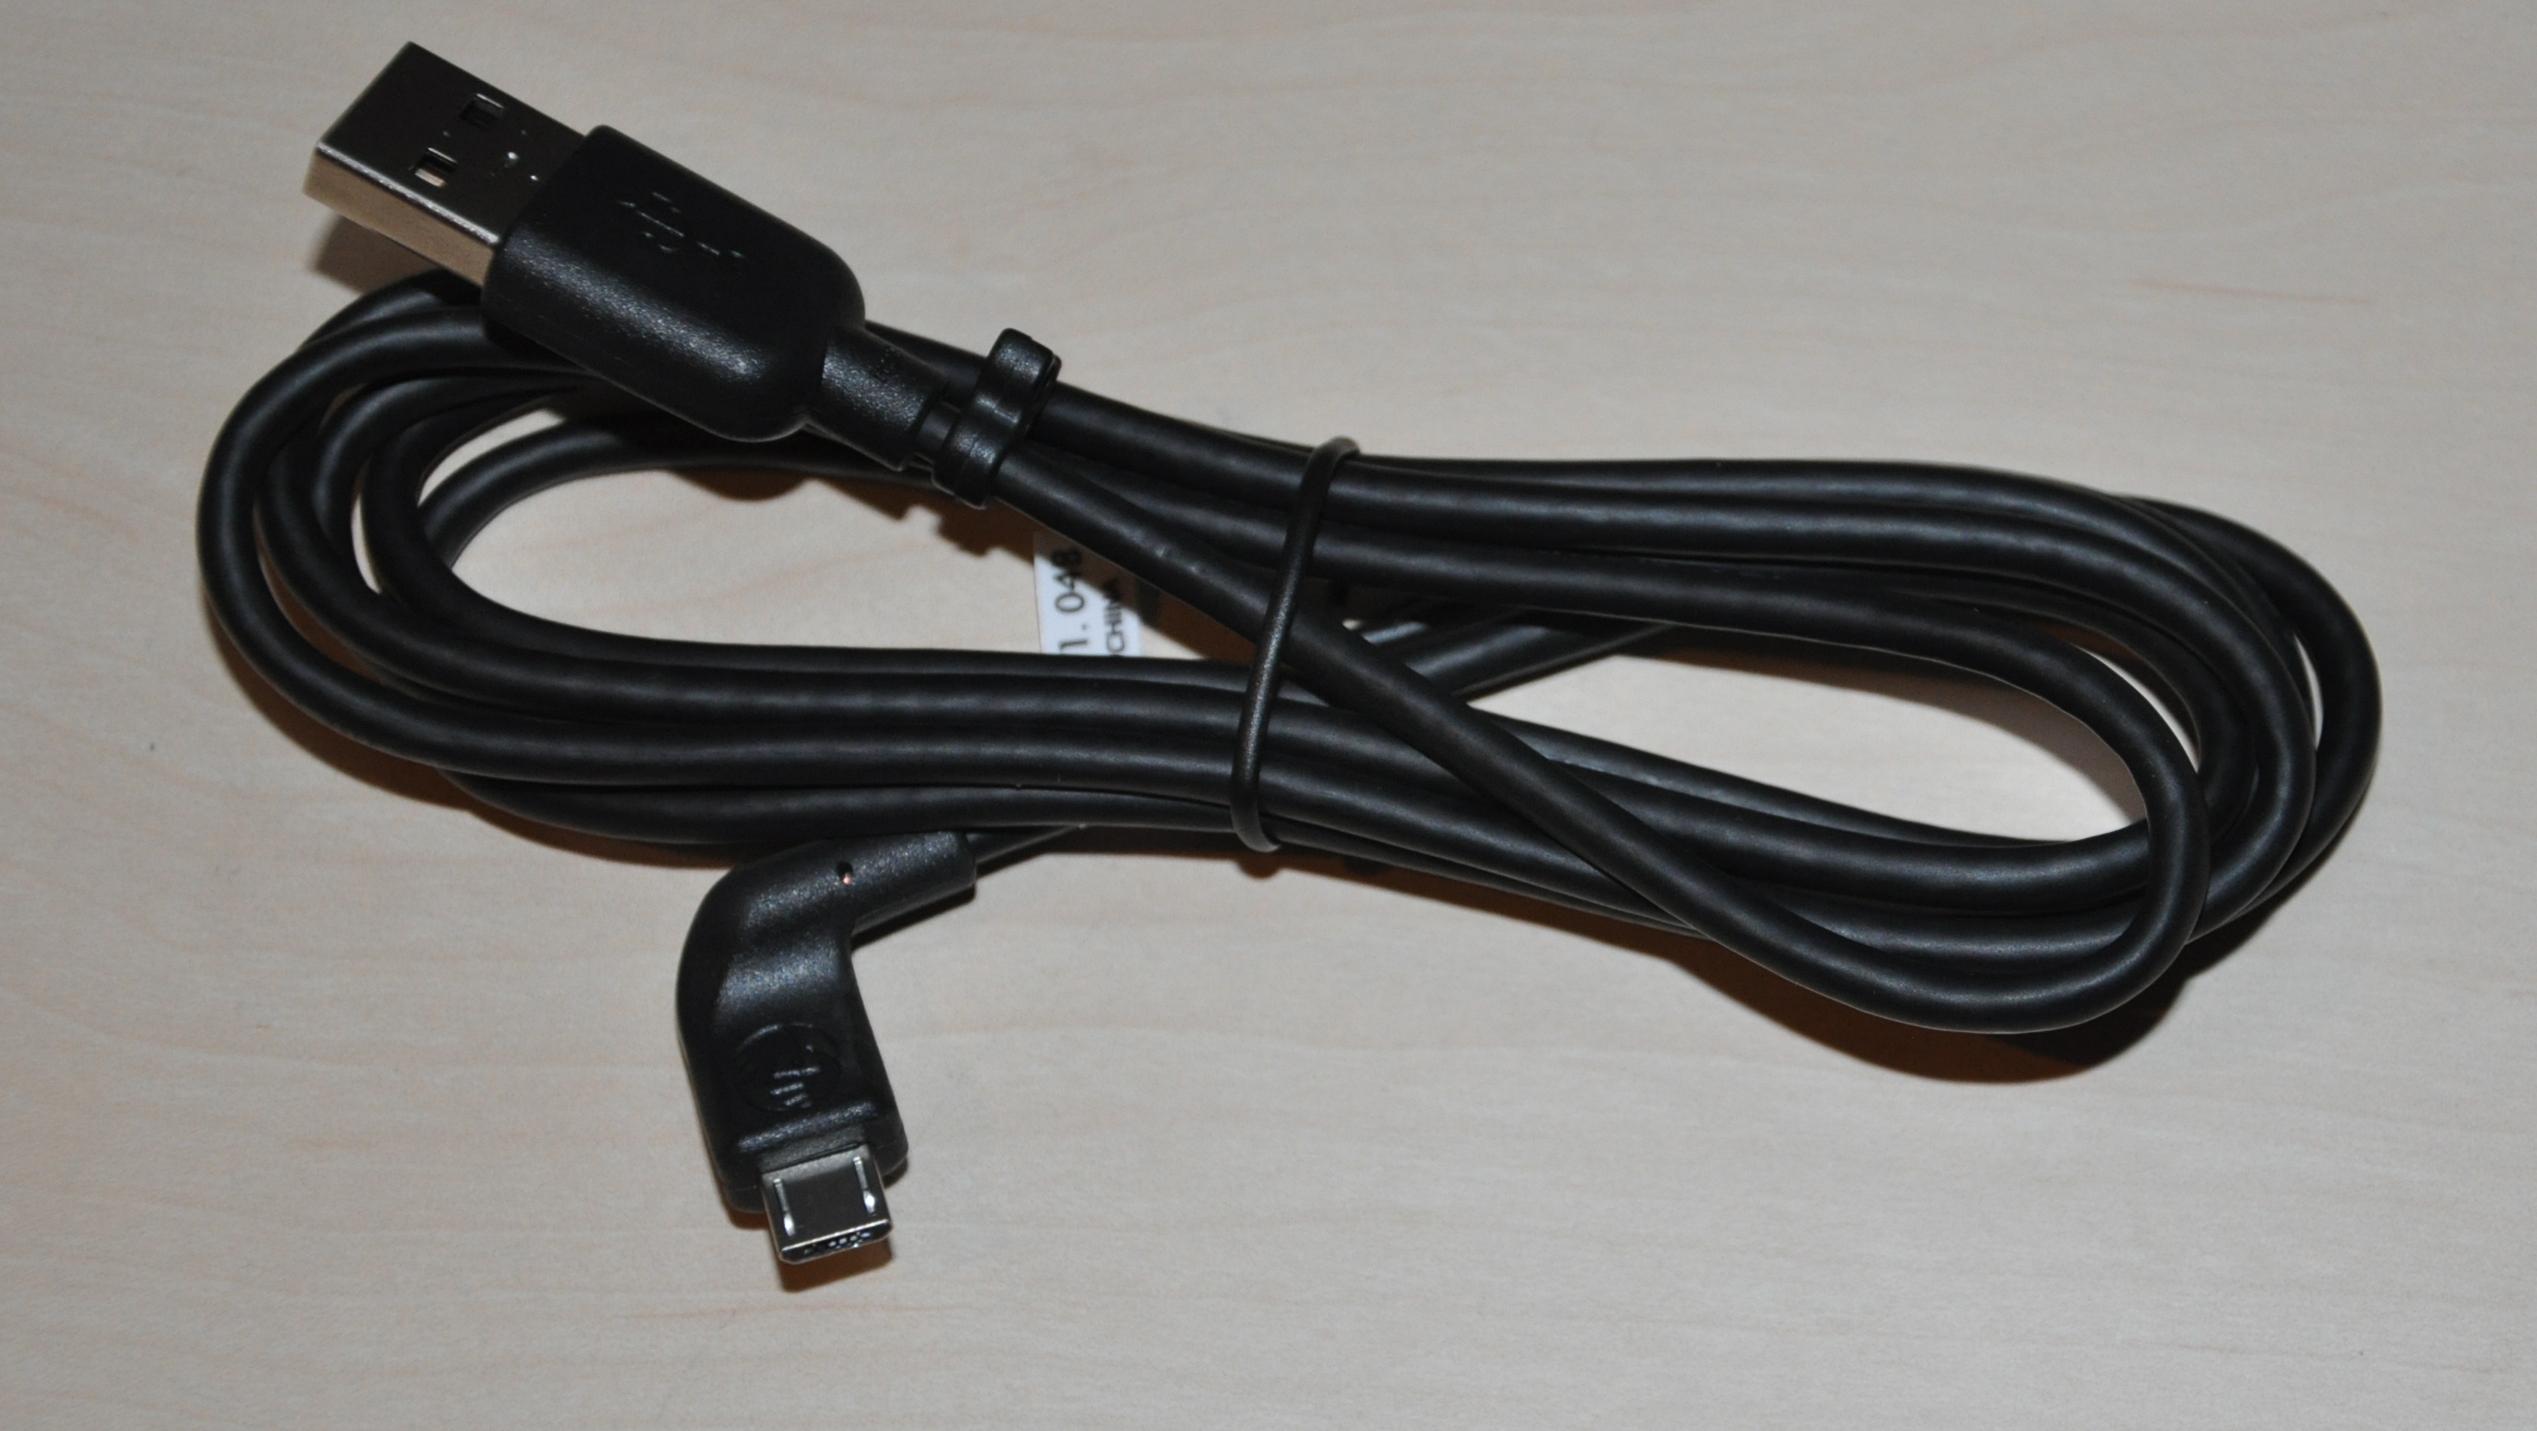 TomTom USB-Autoladegerät mit Micro USB Ladekabel